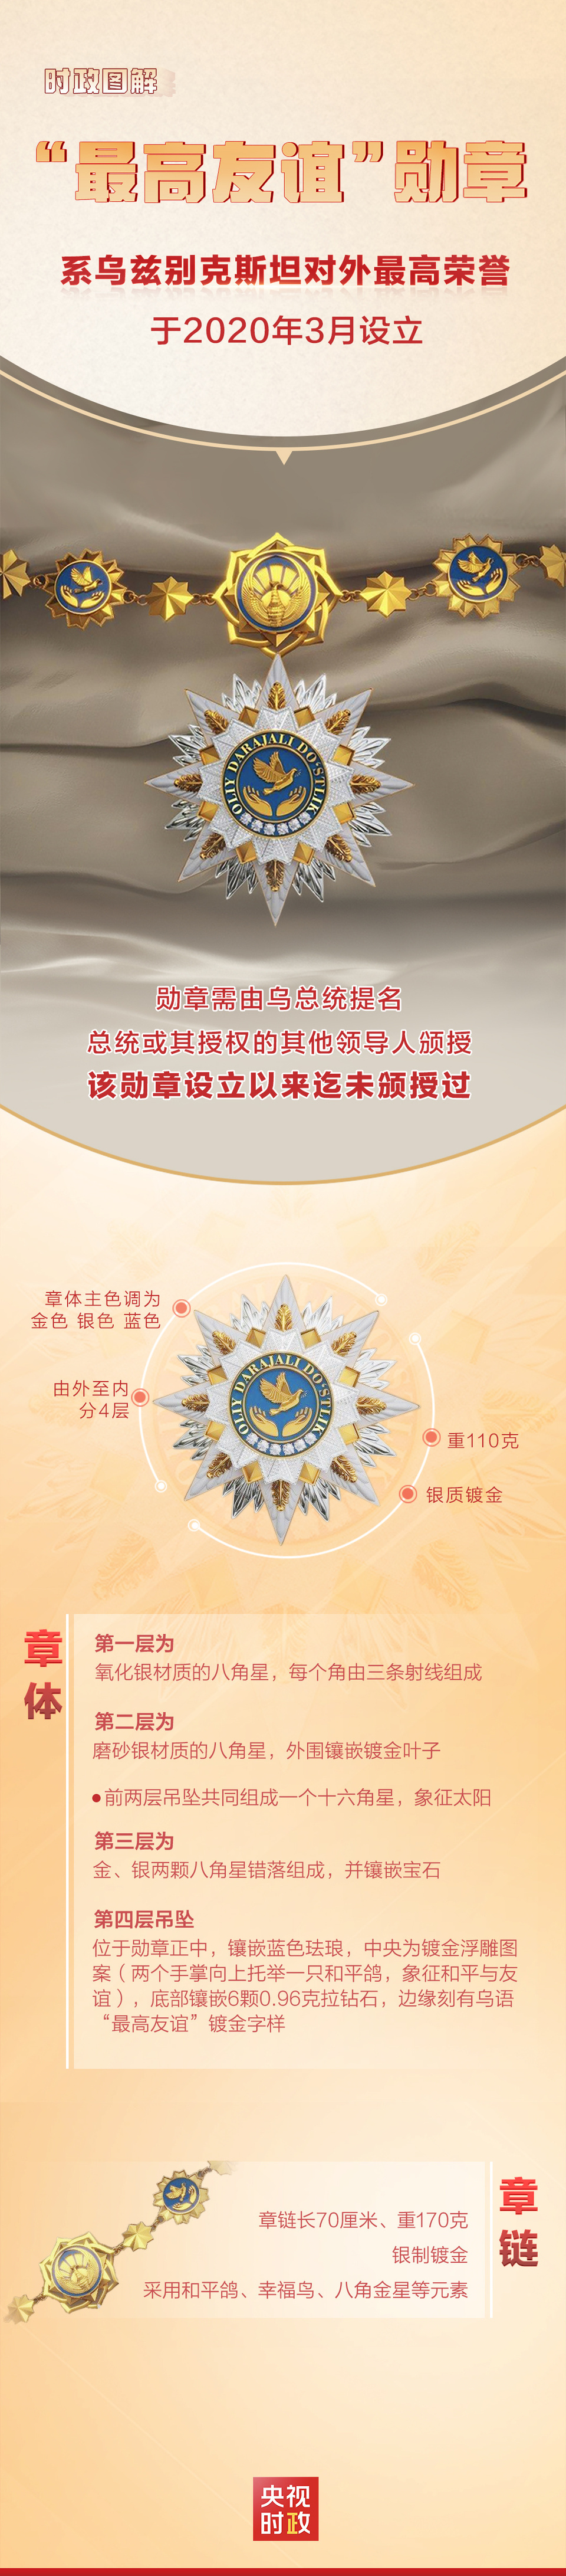 时政图解丨揭秘！乌兹别克斯坦首枚“最高友谊”勋章-ManBetX注册登录·(中国)